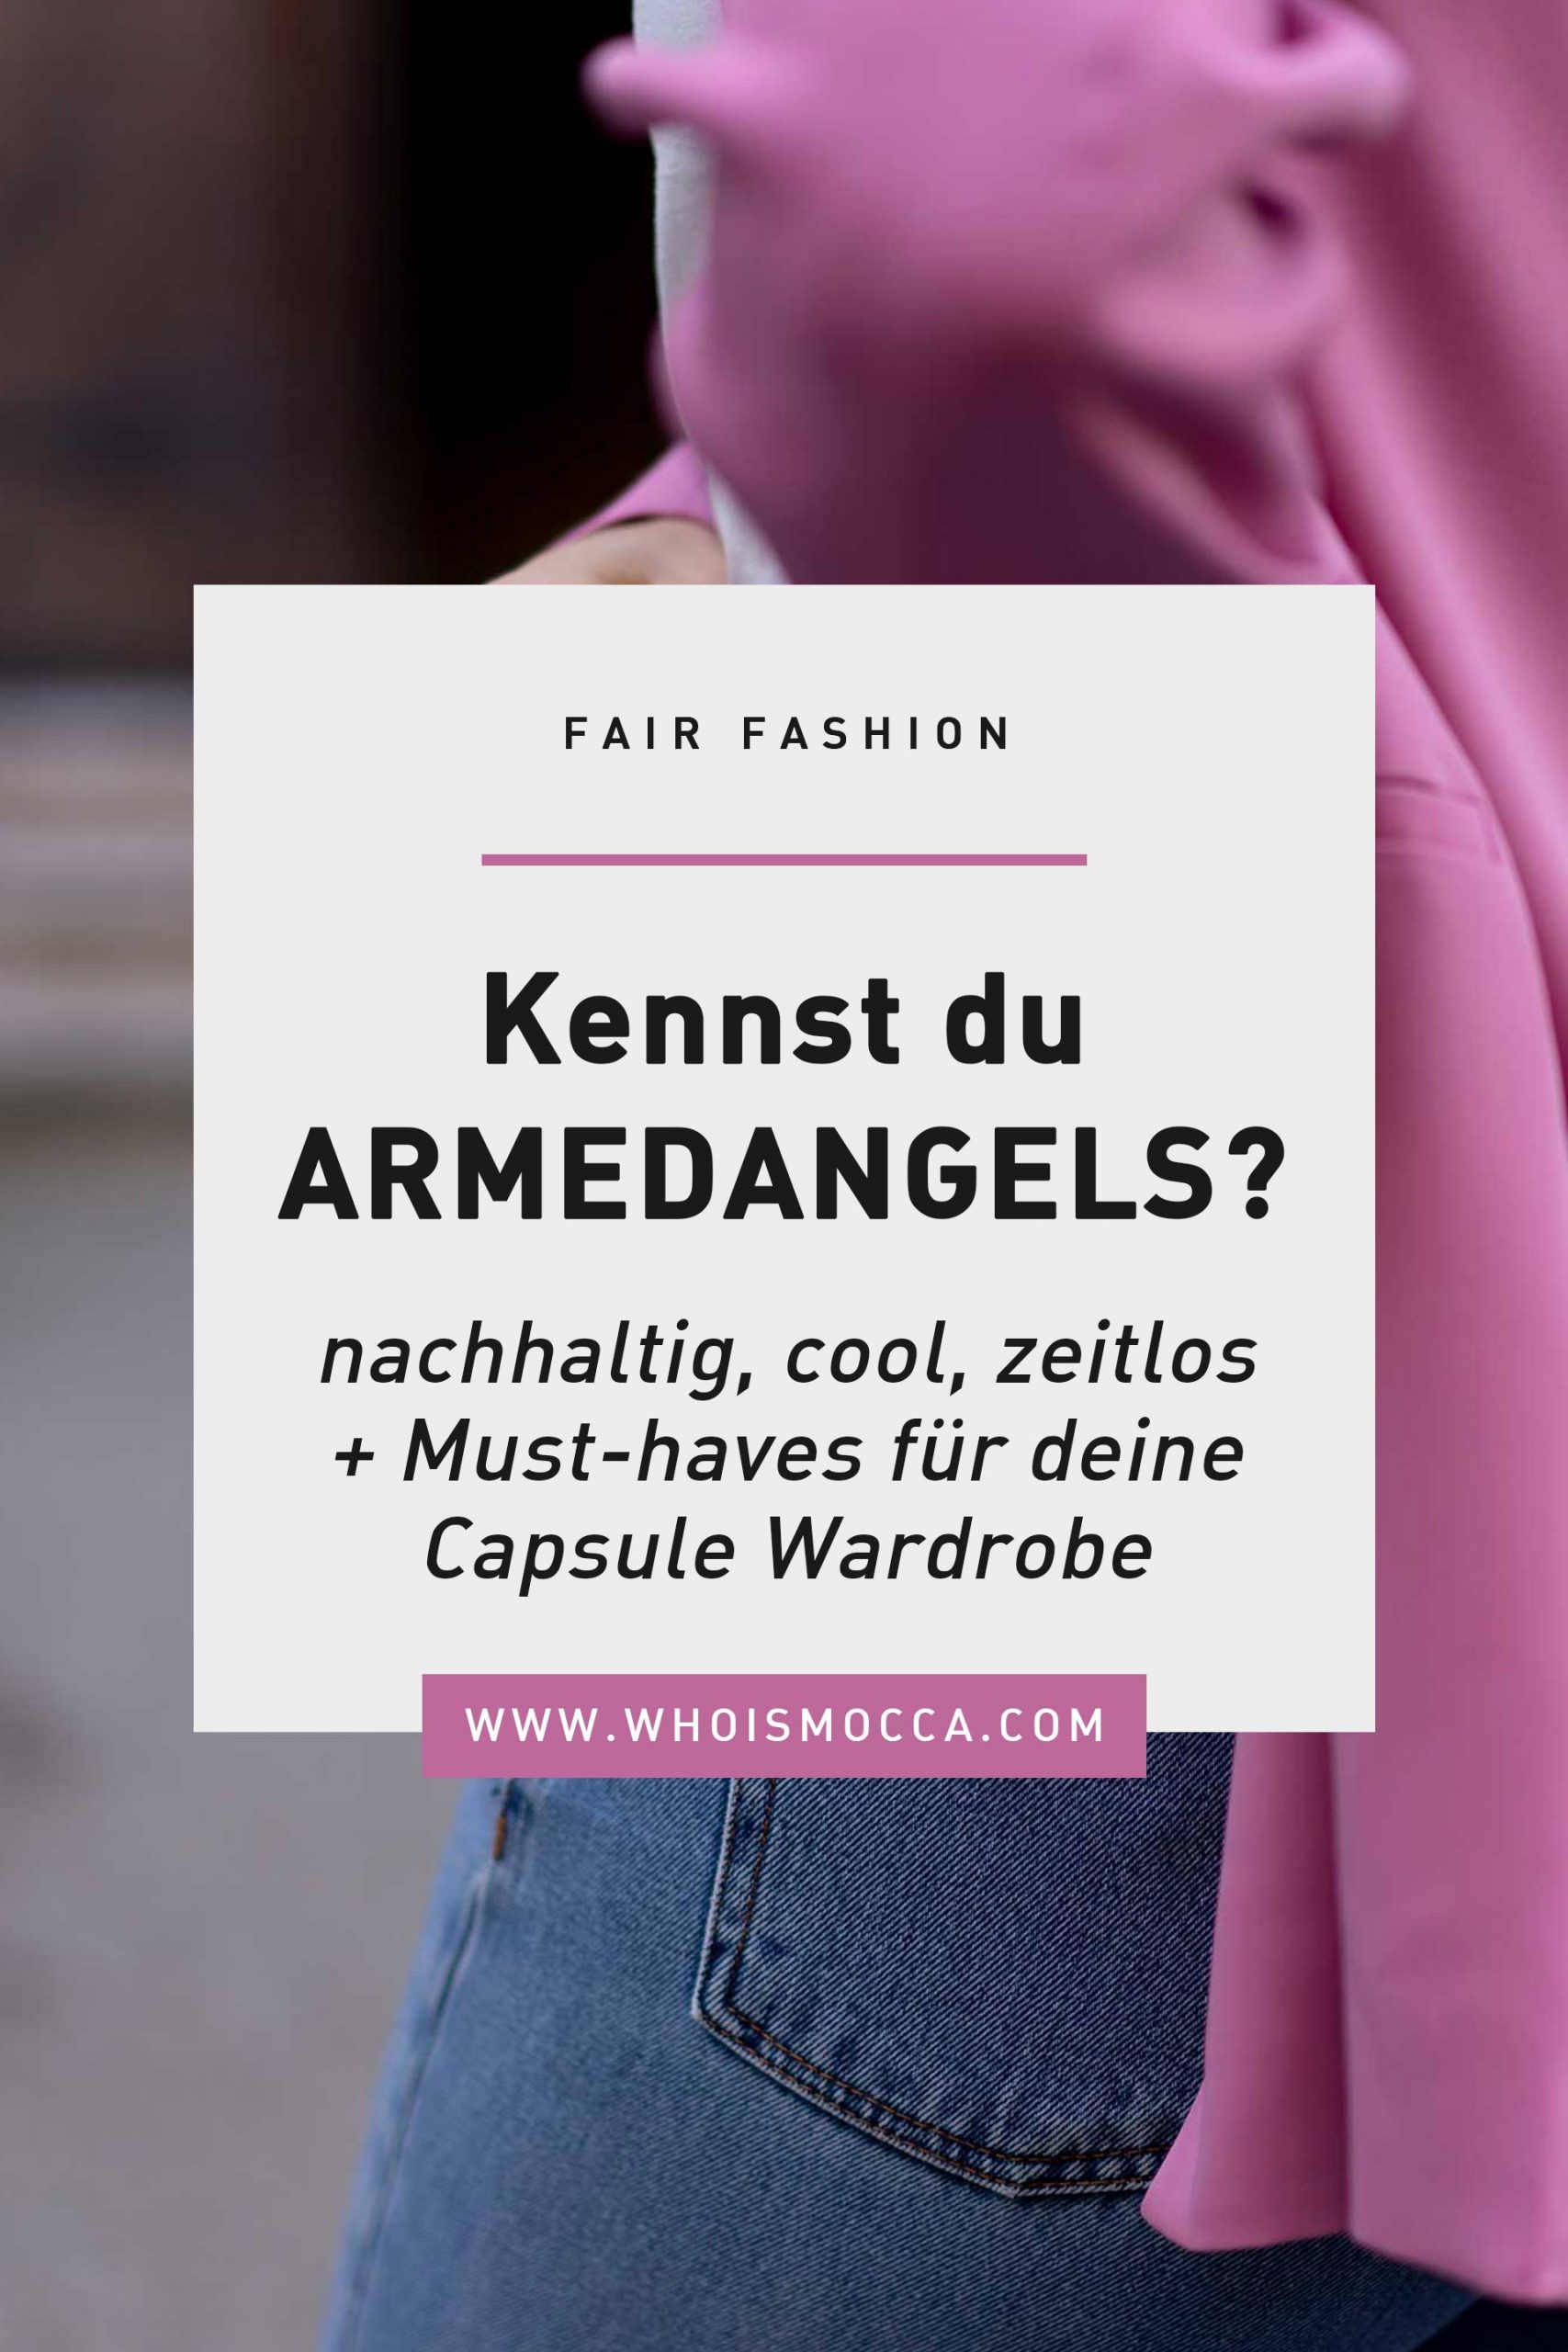 Produktempfehlung. ARMEDANGELS ist eine nachhaltige und coole Marke, die gleichzeitig modische, umweltfreundliche und stylishe Kleidung anbietet. Mehr zu dieser Fair Fashion Brand liest du jetzt am Modeblog. www.whoismocca.com